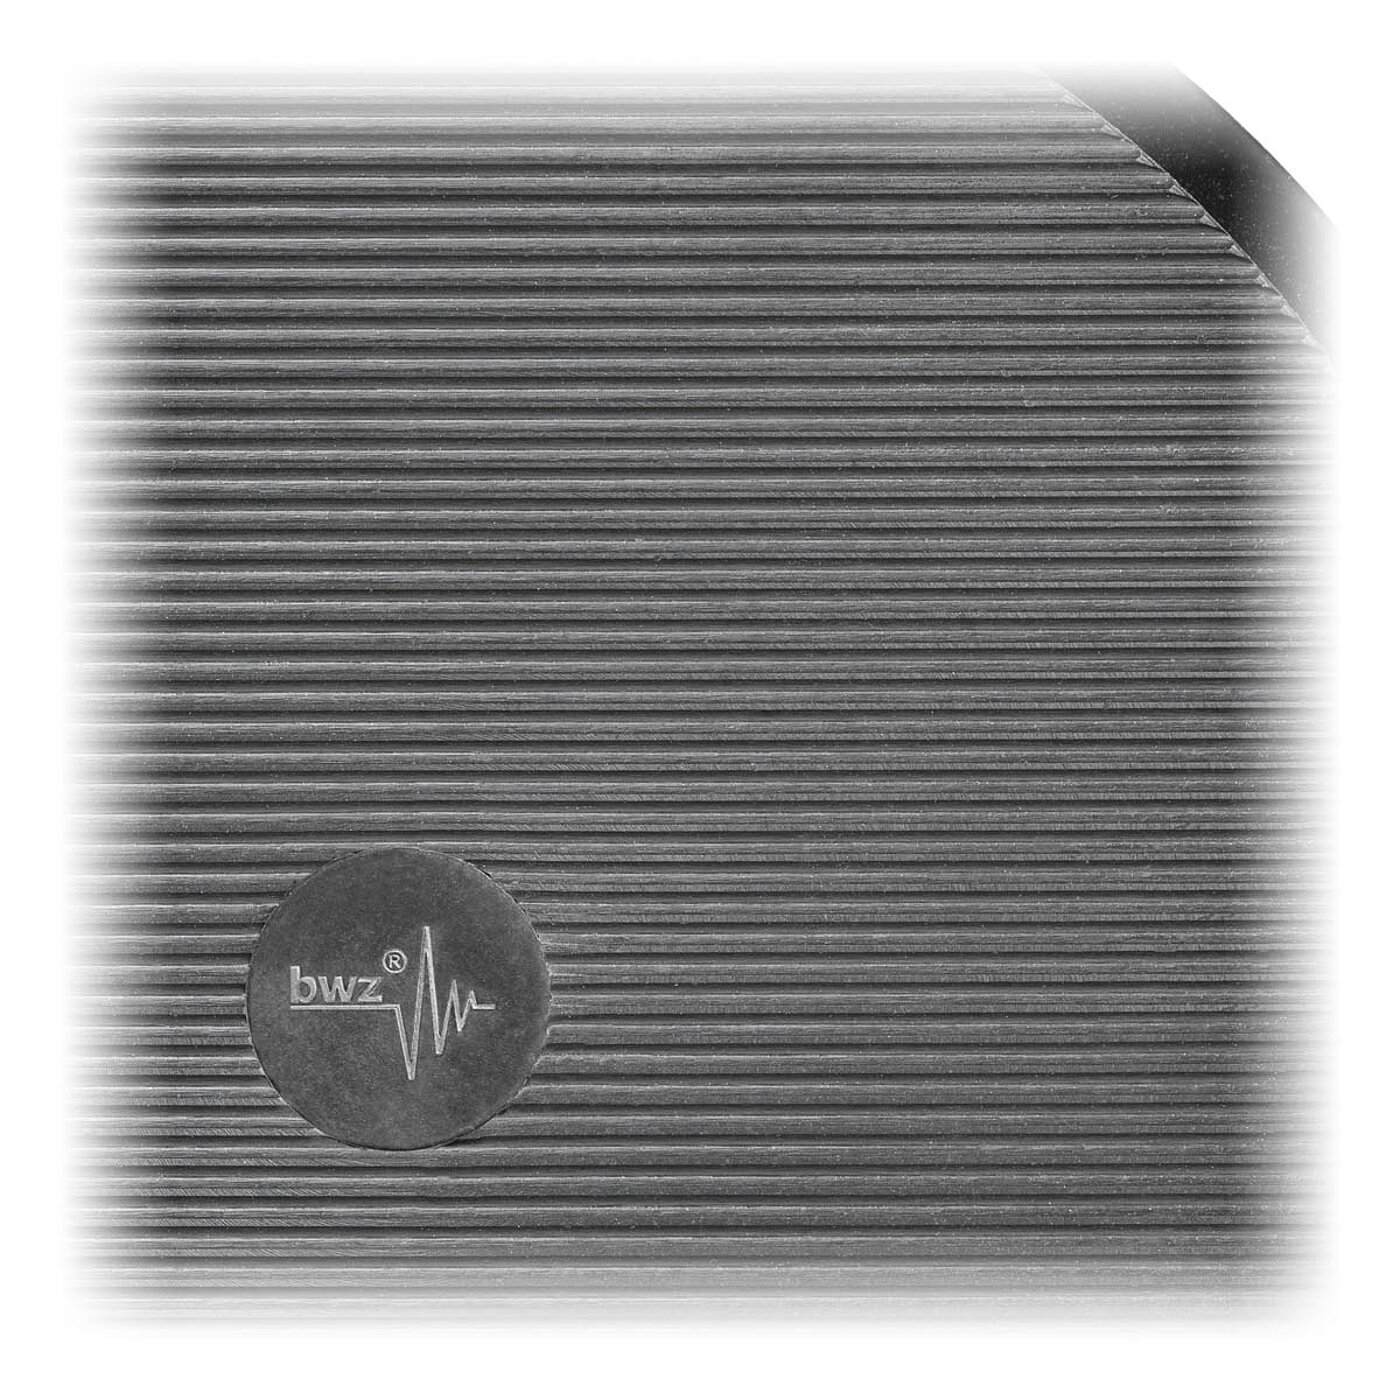 Detailaufnahme eines schwarzen Elastomeres aus Nitrilkautschuk NBR für Gleitschutz mit feinen horizontal verlaufenden Profilrillen und Logo der Firma bwz Schwingungstechnik, freigestellt auf weißem Hintergrund